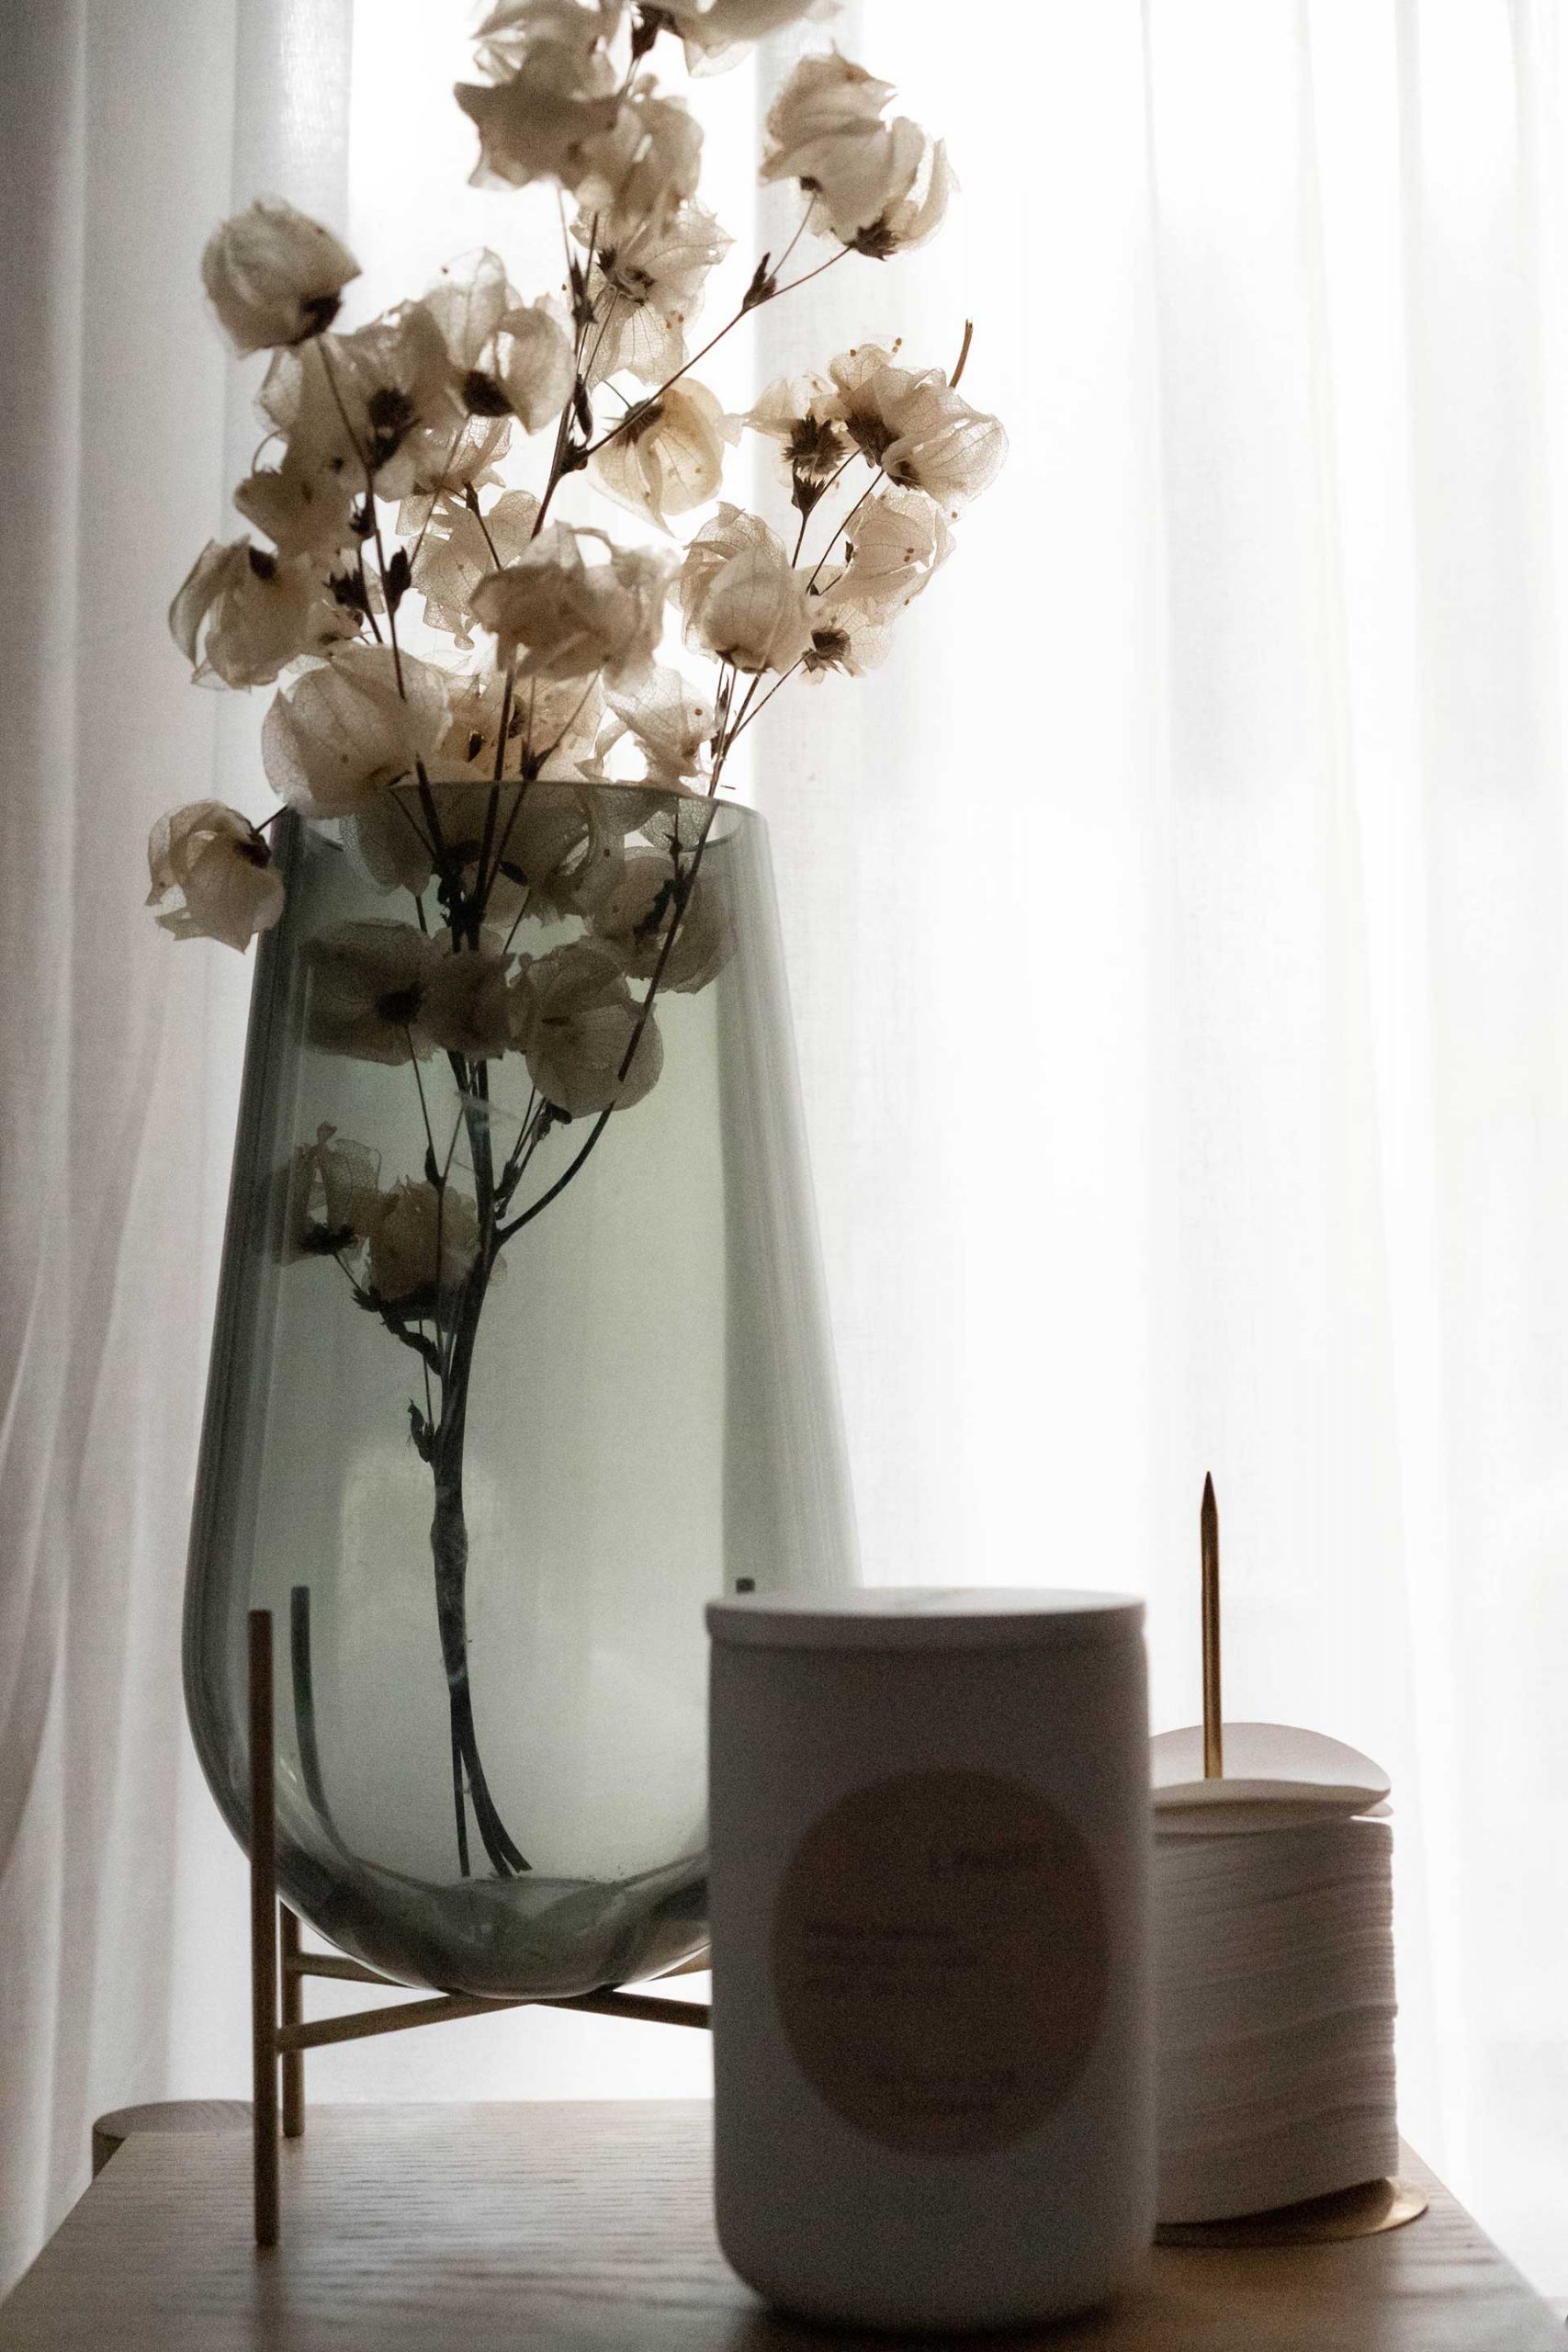 In diesem Ratgeber findest du Deko-Tipps und Ideen für Vasen. Nutze diese Tipps, um dein Zuhause noch schöner zu machen!